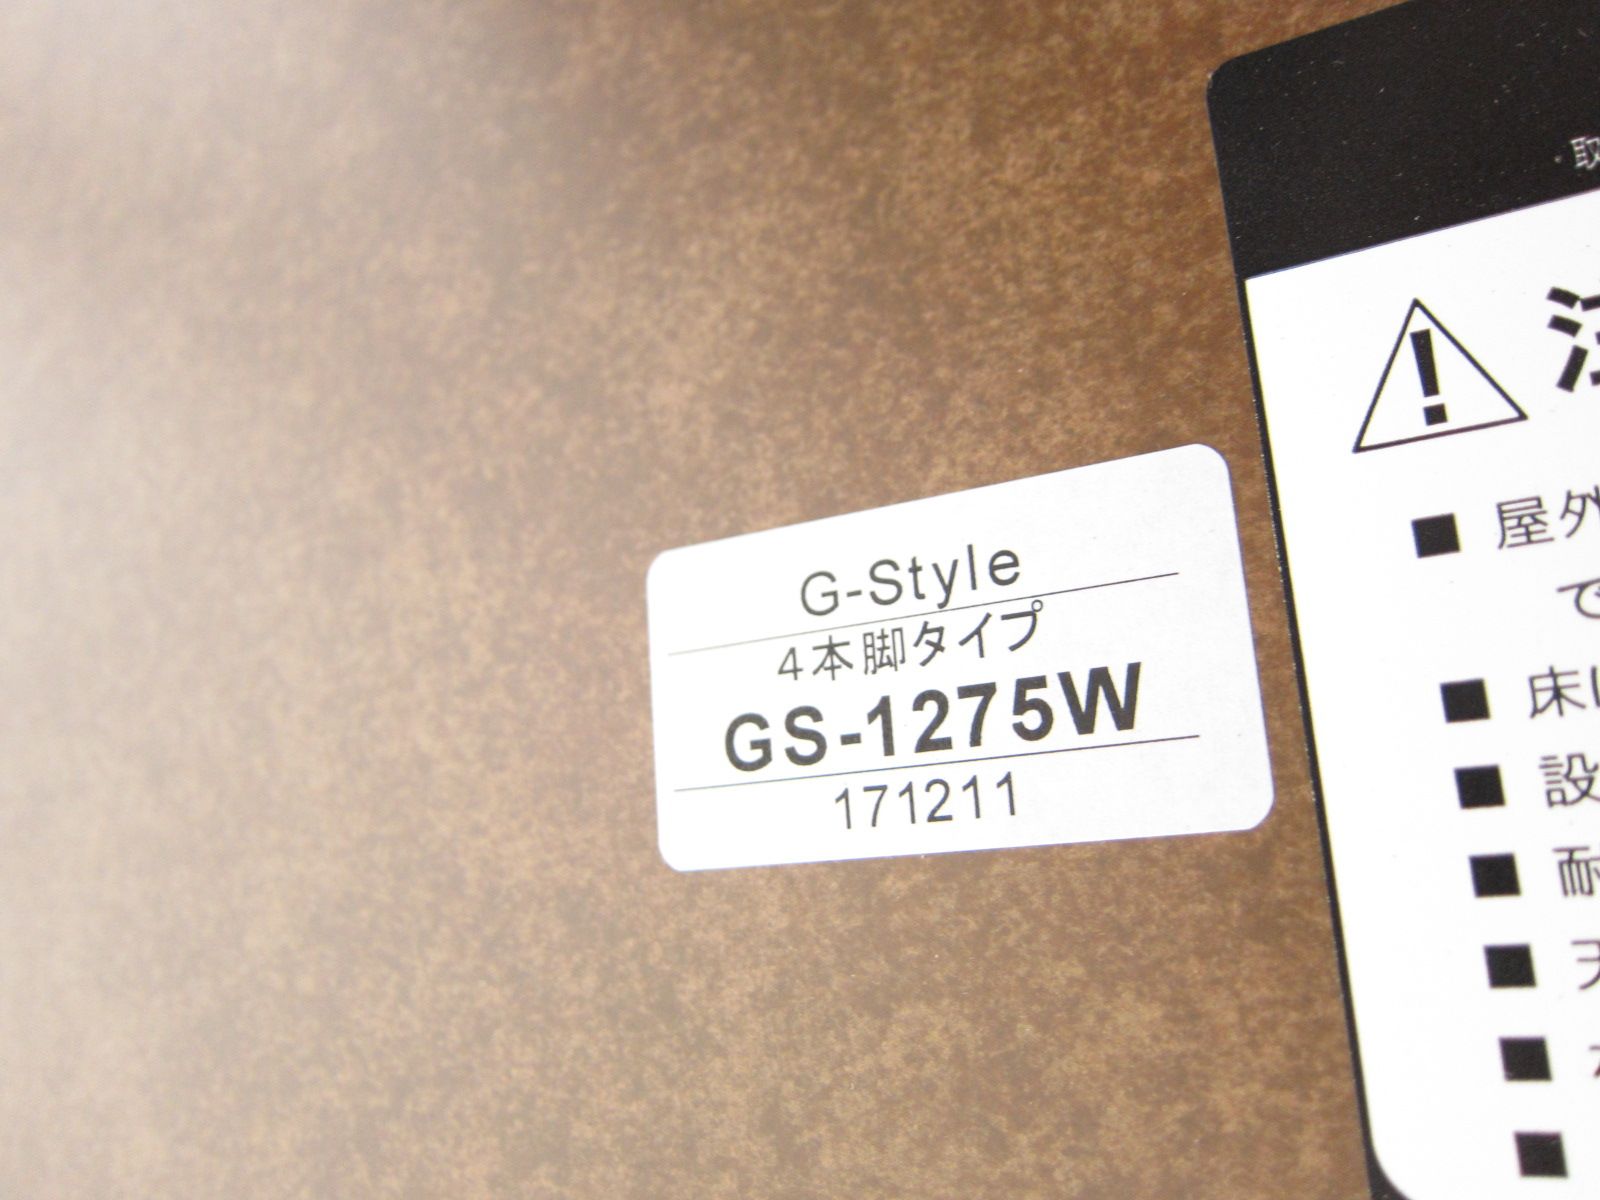 【激安新作】G-style GS-1275W ミーティングテーブル ホワイト W2100以内 会議室机 商談テーブル 会議テーブル YH6963 中古 一般